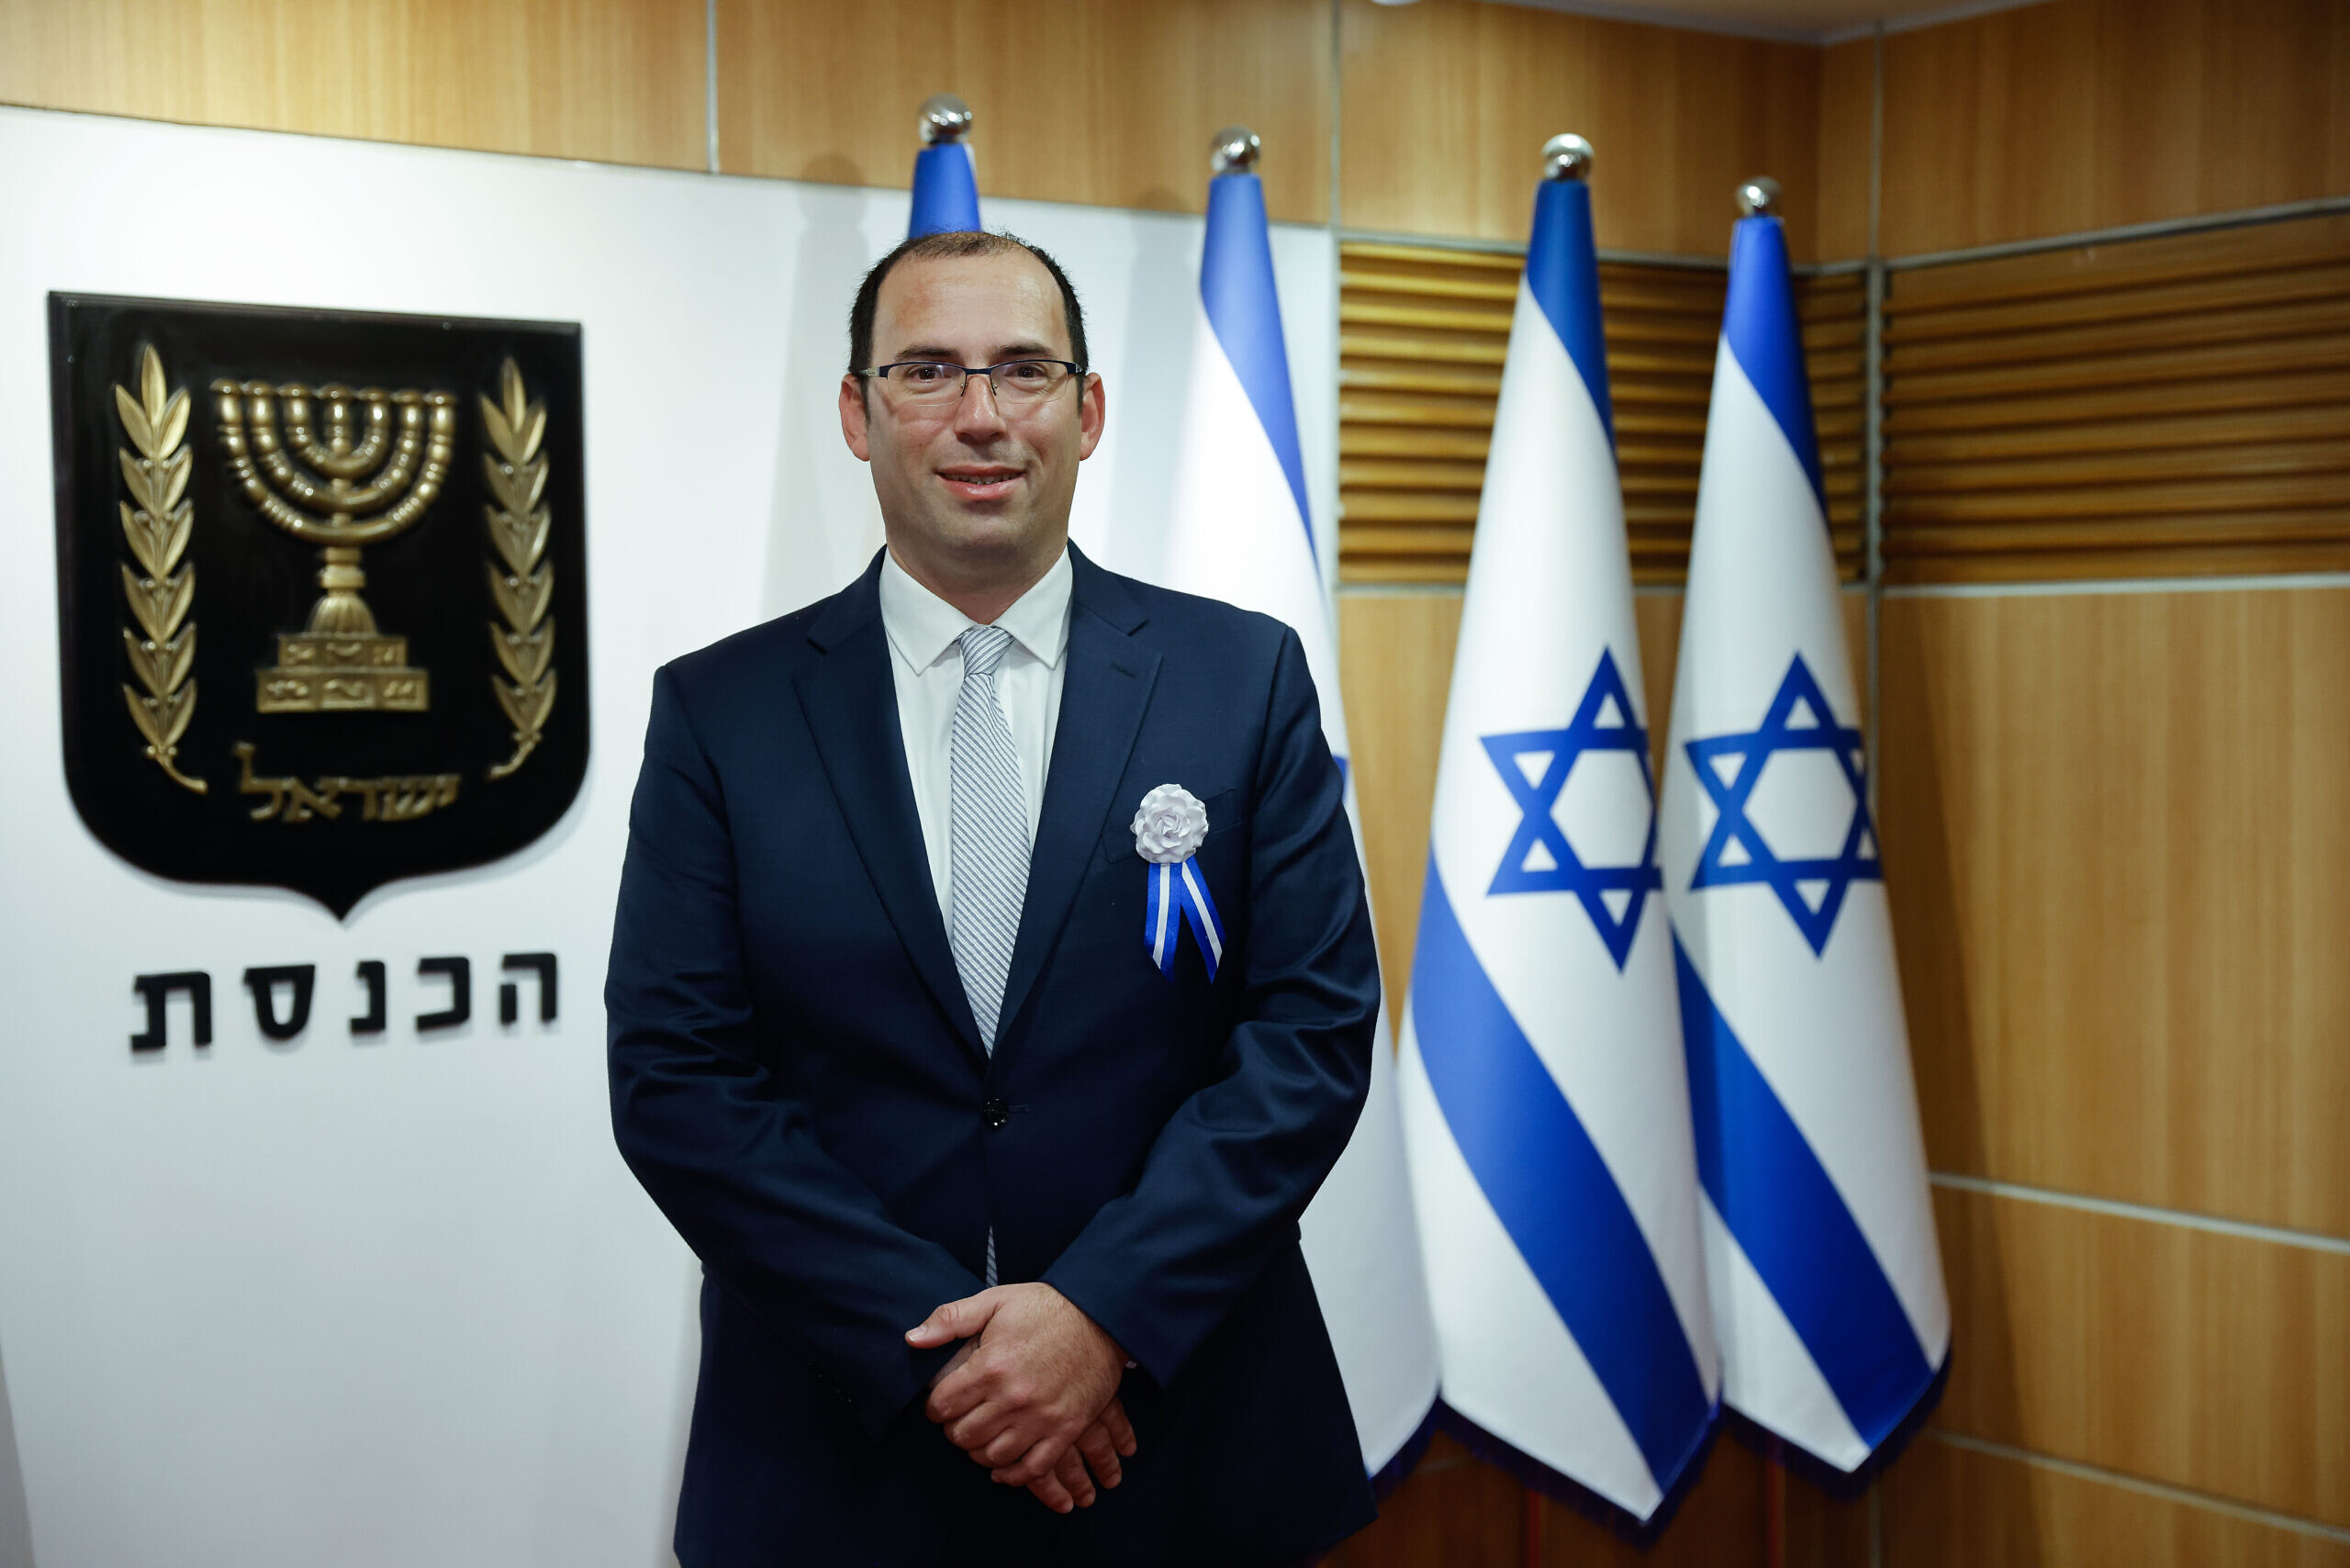 Le député Simcha Rothman arrivant au Parlement israélien, pour la session d'ouverture de la Knesset, à Jérusalem le 15 novembre 2022. (Crédit : Olivier Fitoussi/Flash90)